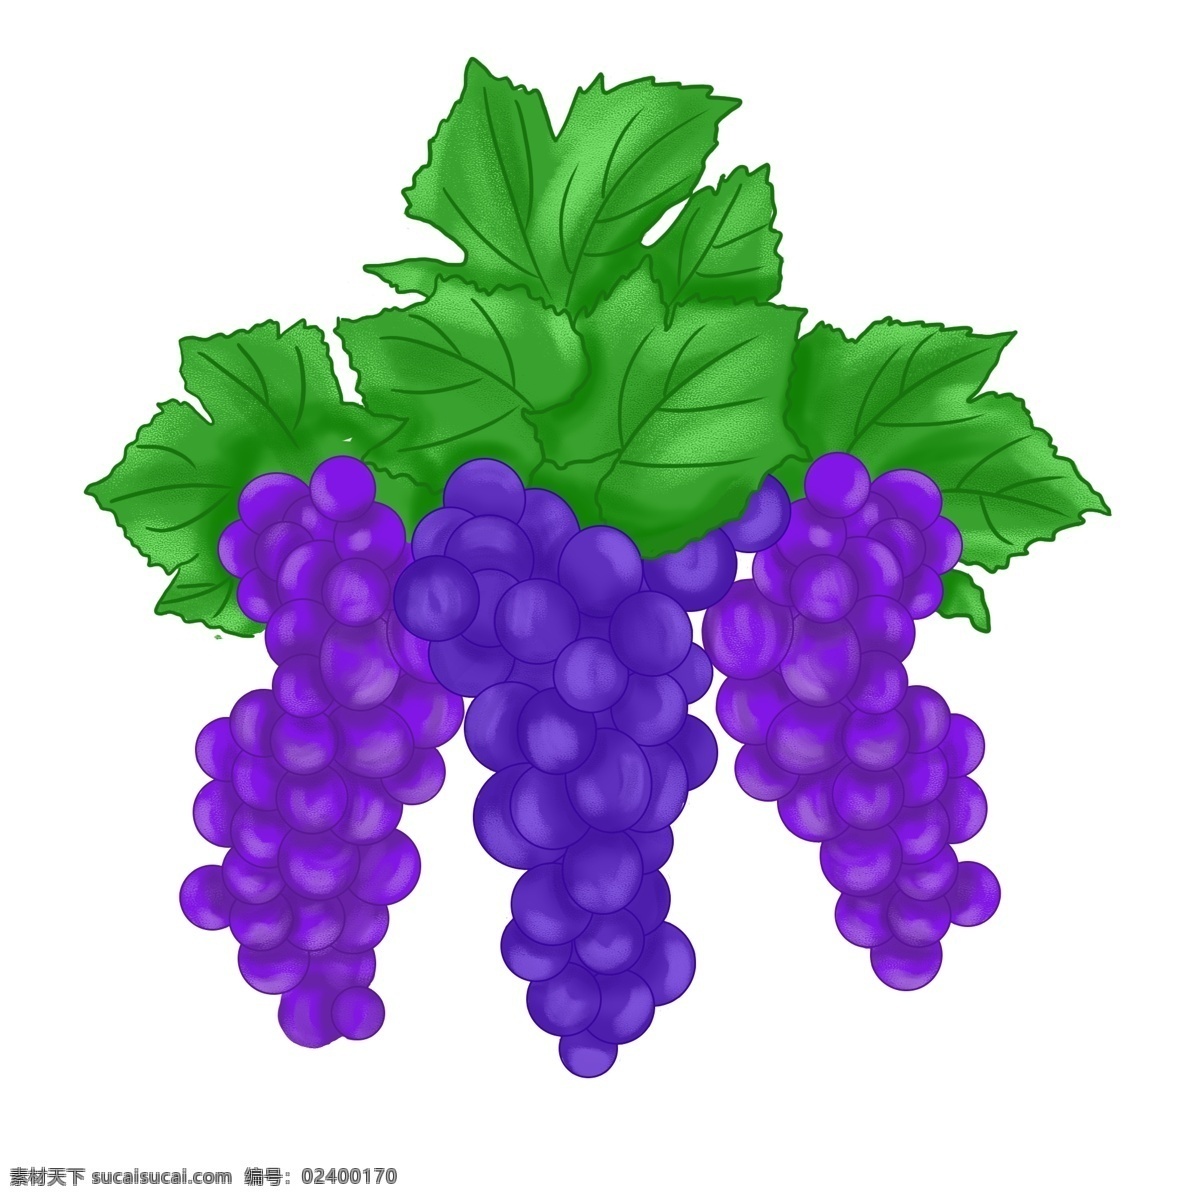 水果 葡萄 紫色 小清 新手 绘 生鲜 绿叶 小清新 手绘